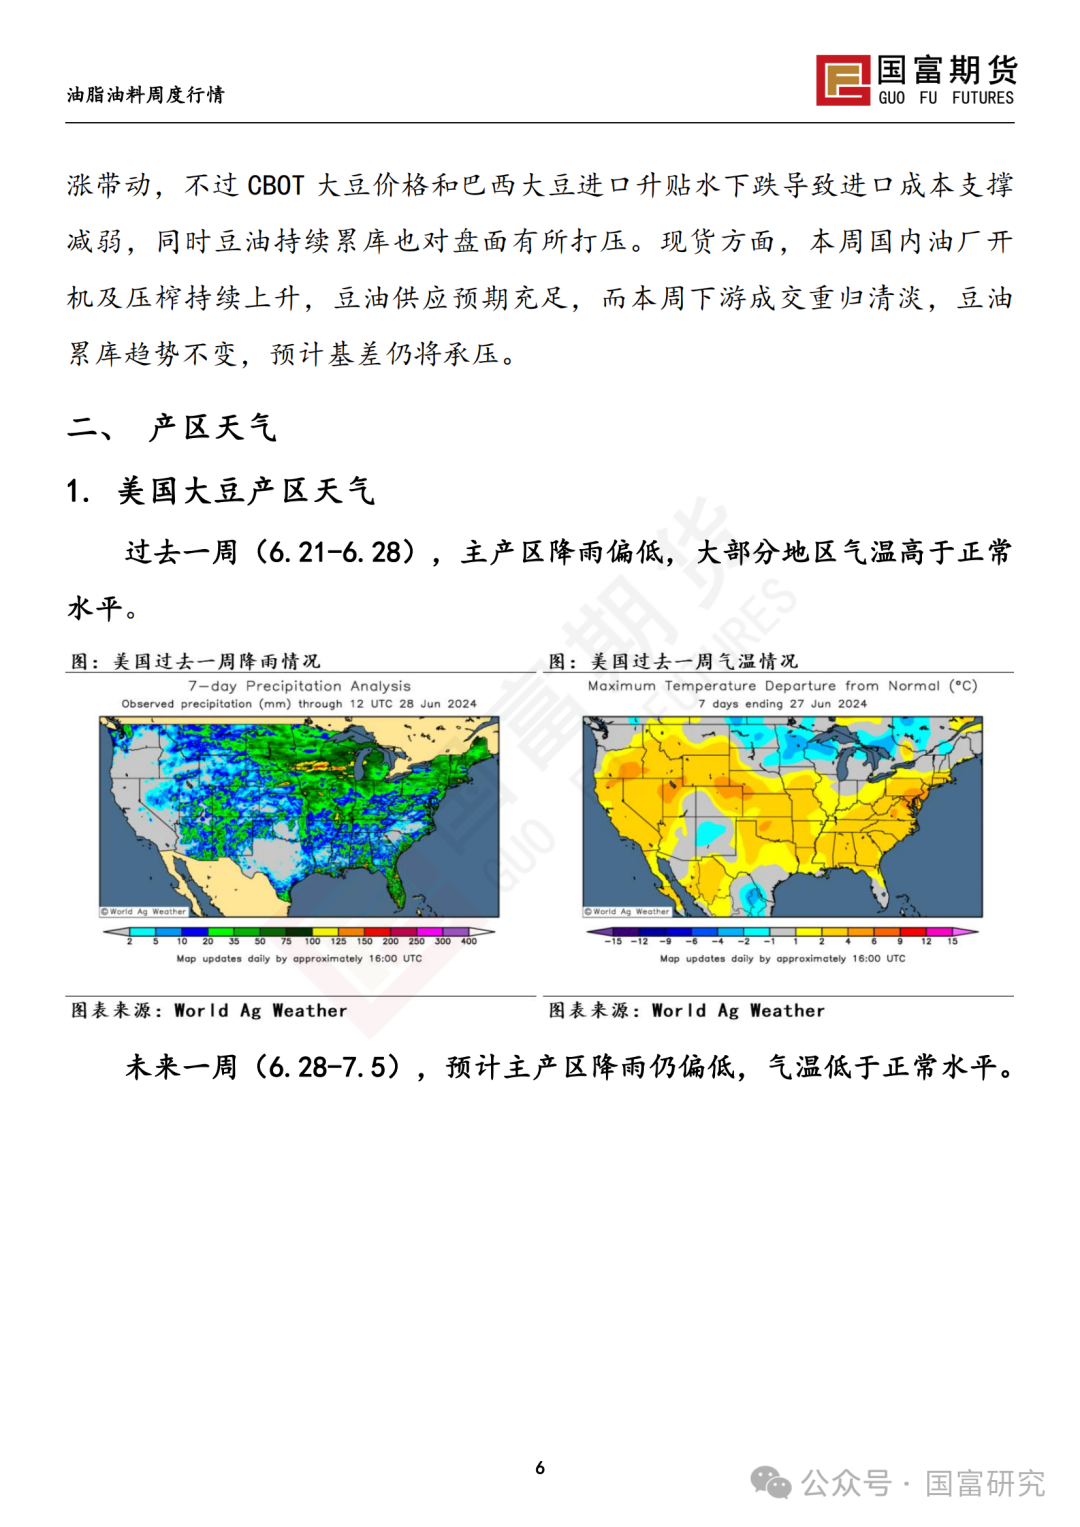 【国富豆系研究周报】USDA双报告中性略多，市场等待天气驱动 20240701